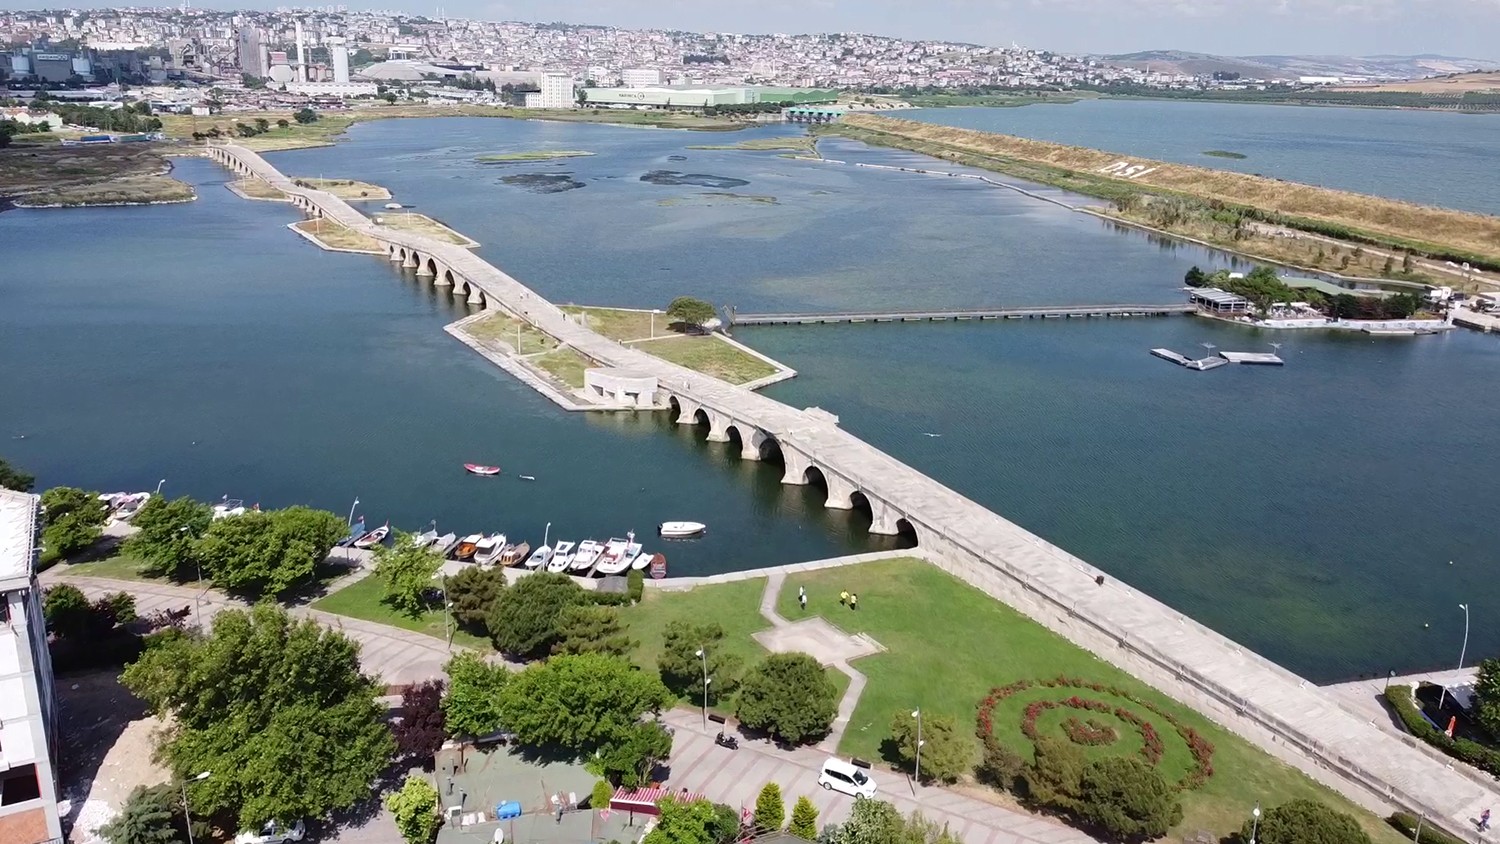 Mimar Sinan’ın şaheseri olan tarihi köprü yıkılma tehlikesi altında